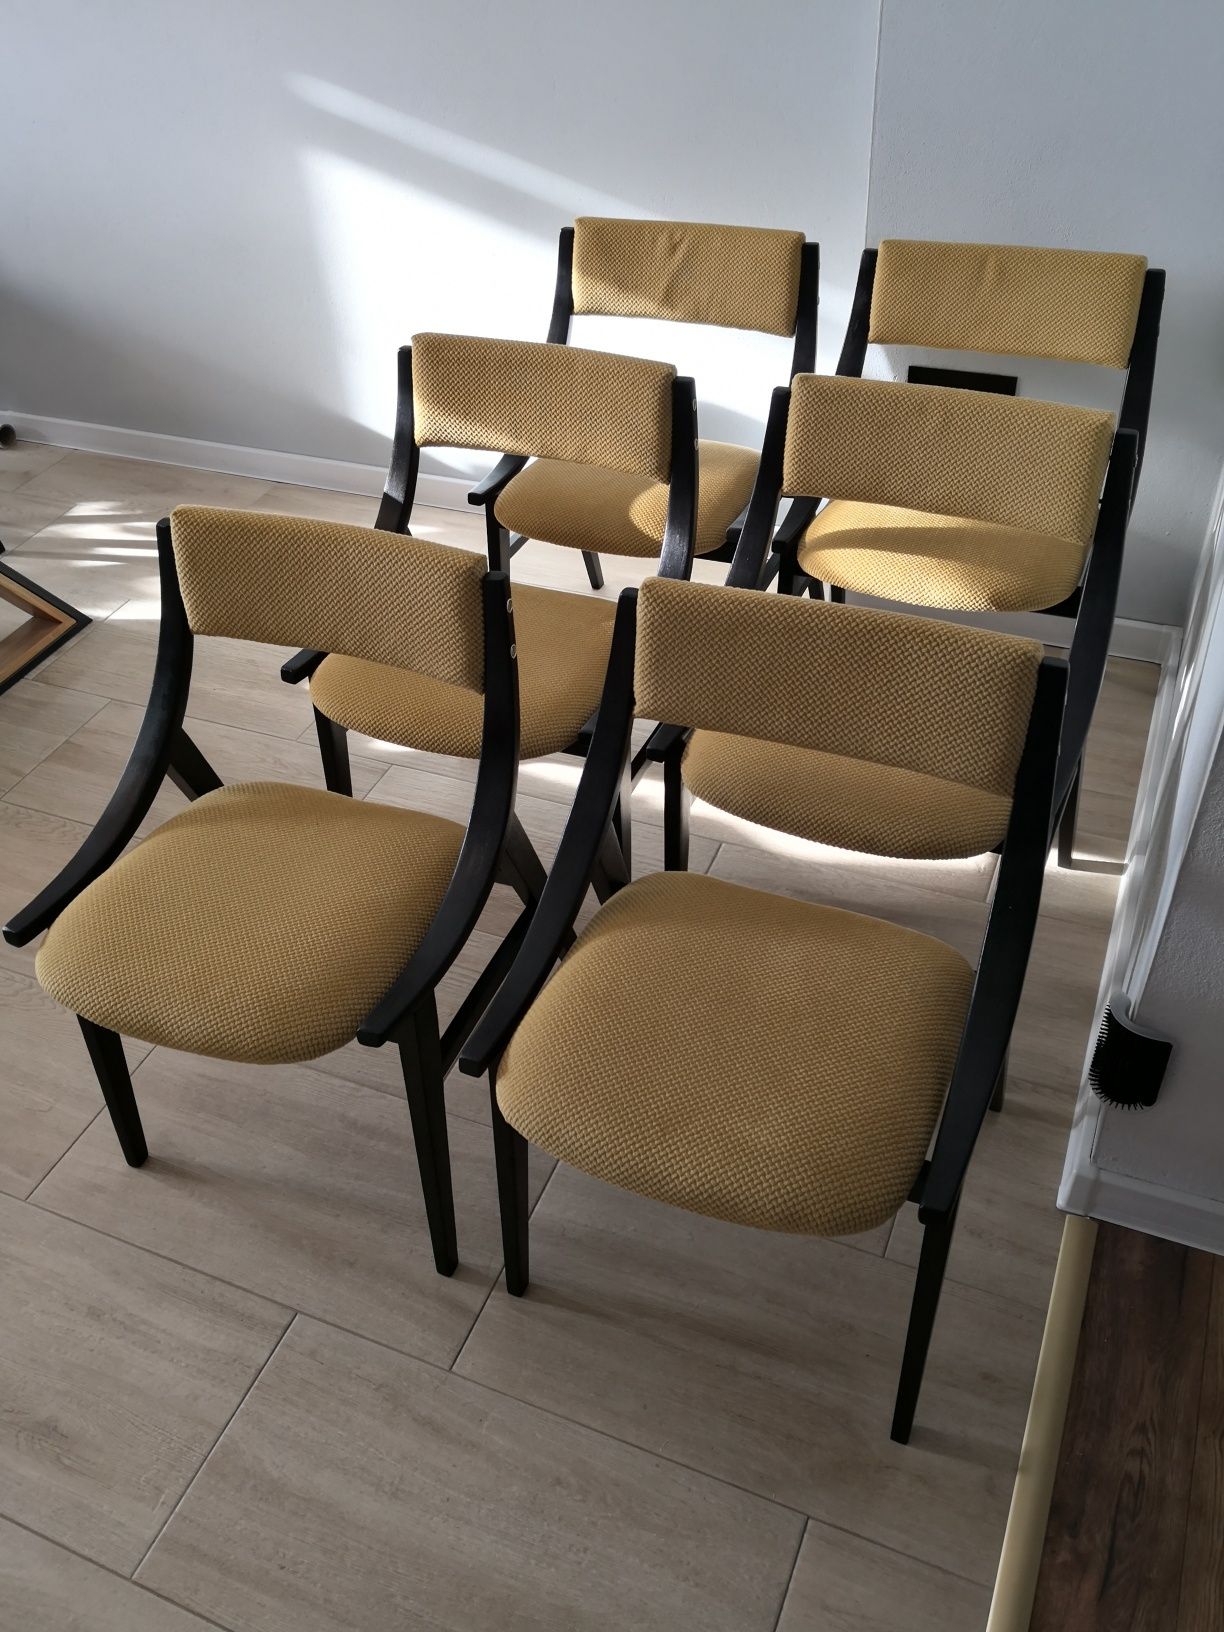 Komplet krzeseł Skoczek, po kompletnej renowacji GFM-57, 6szt, PRL,